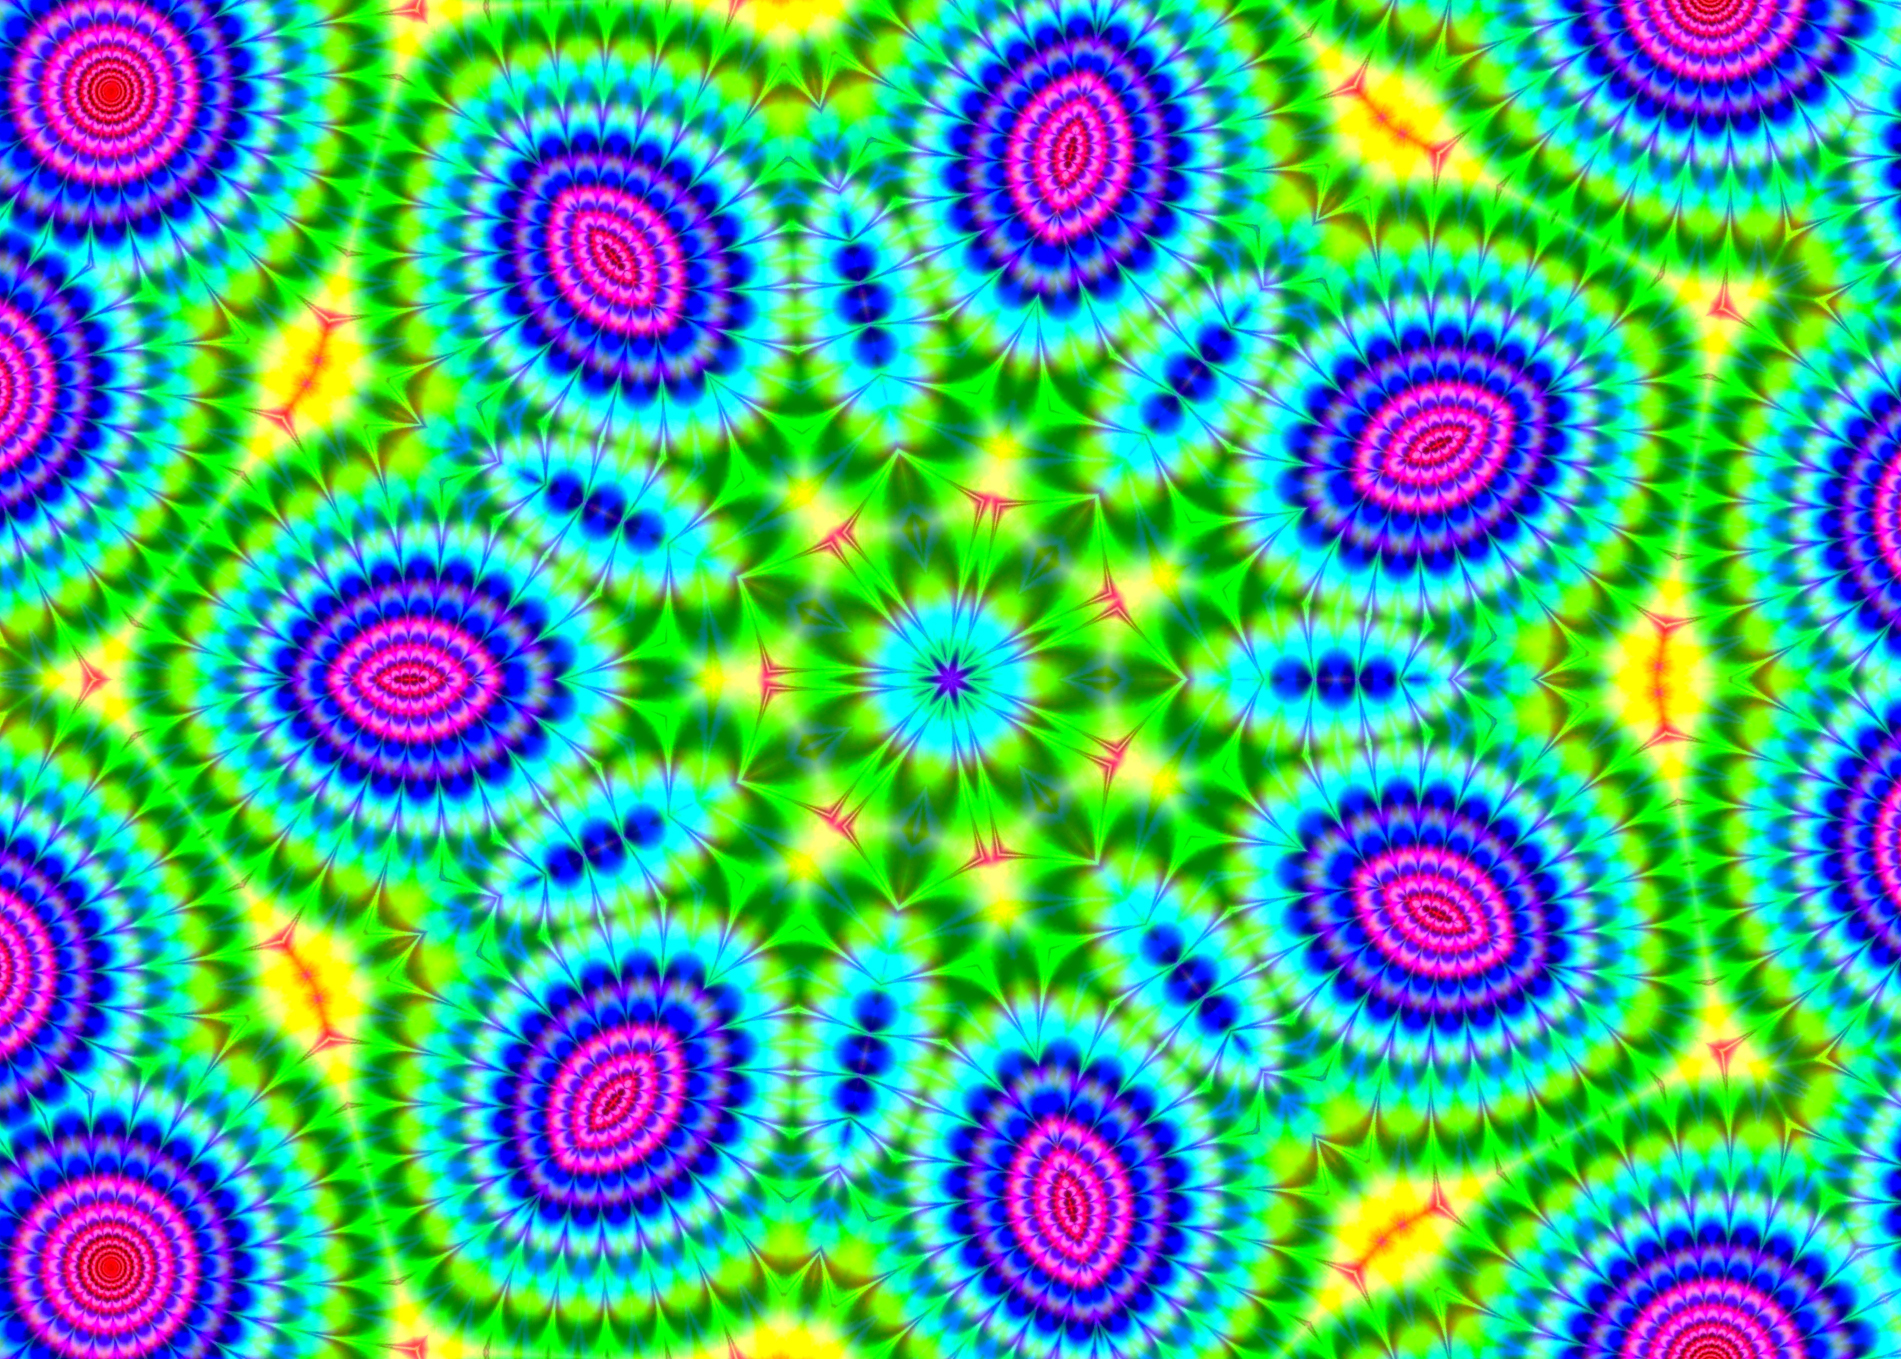 Flower kaleidoscope #53 by Mimosa